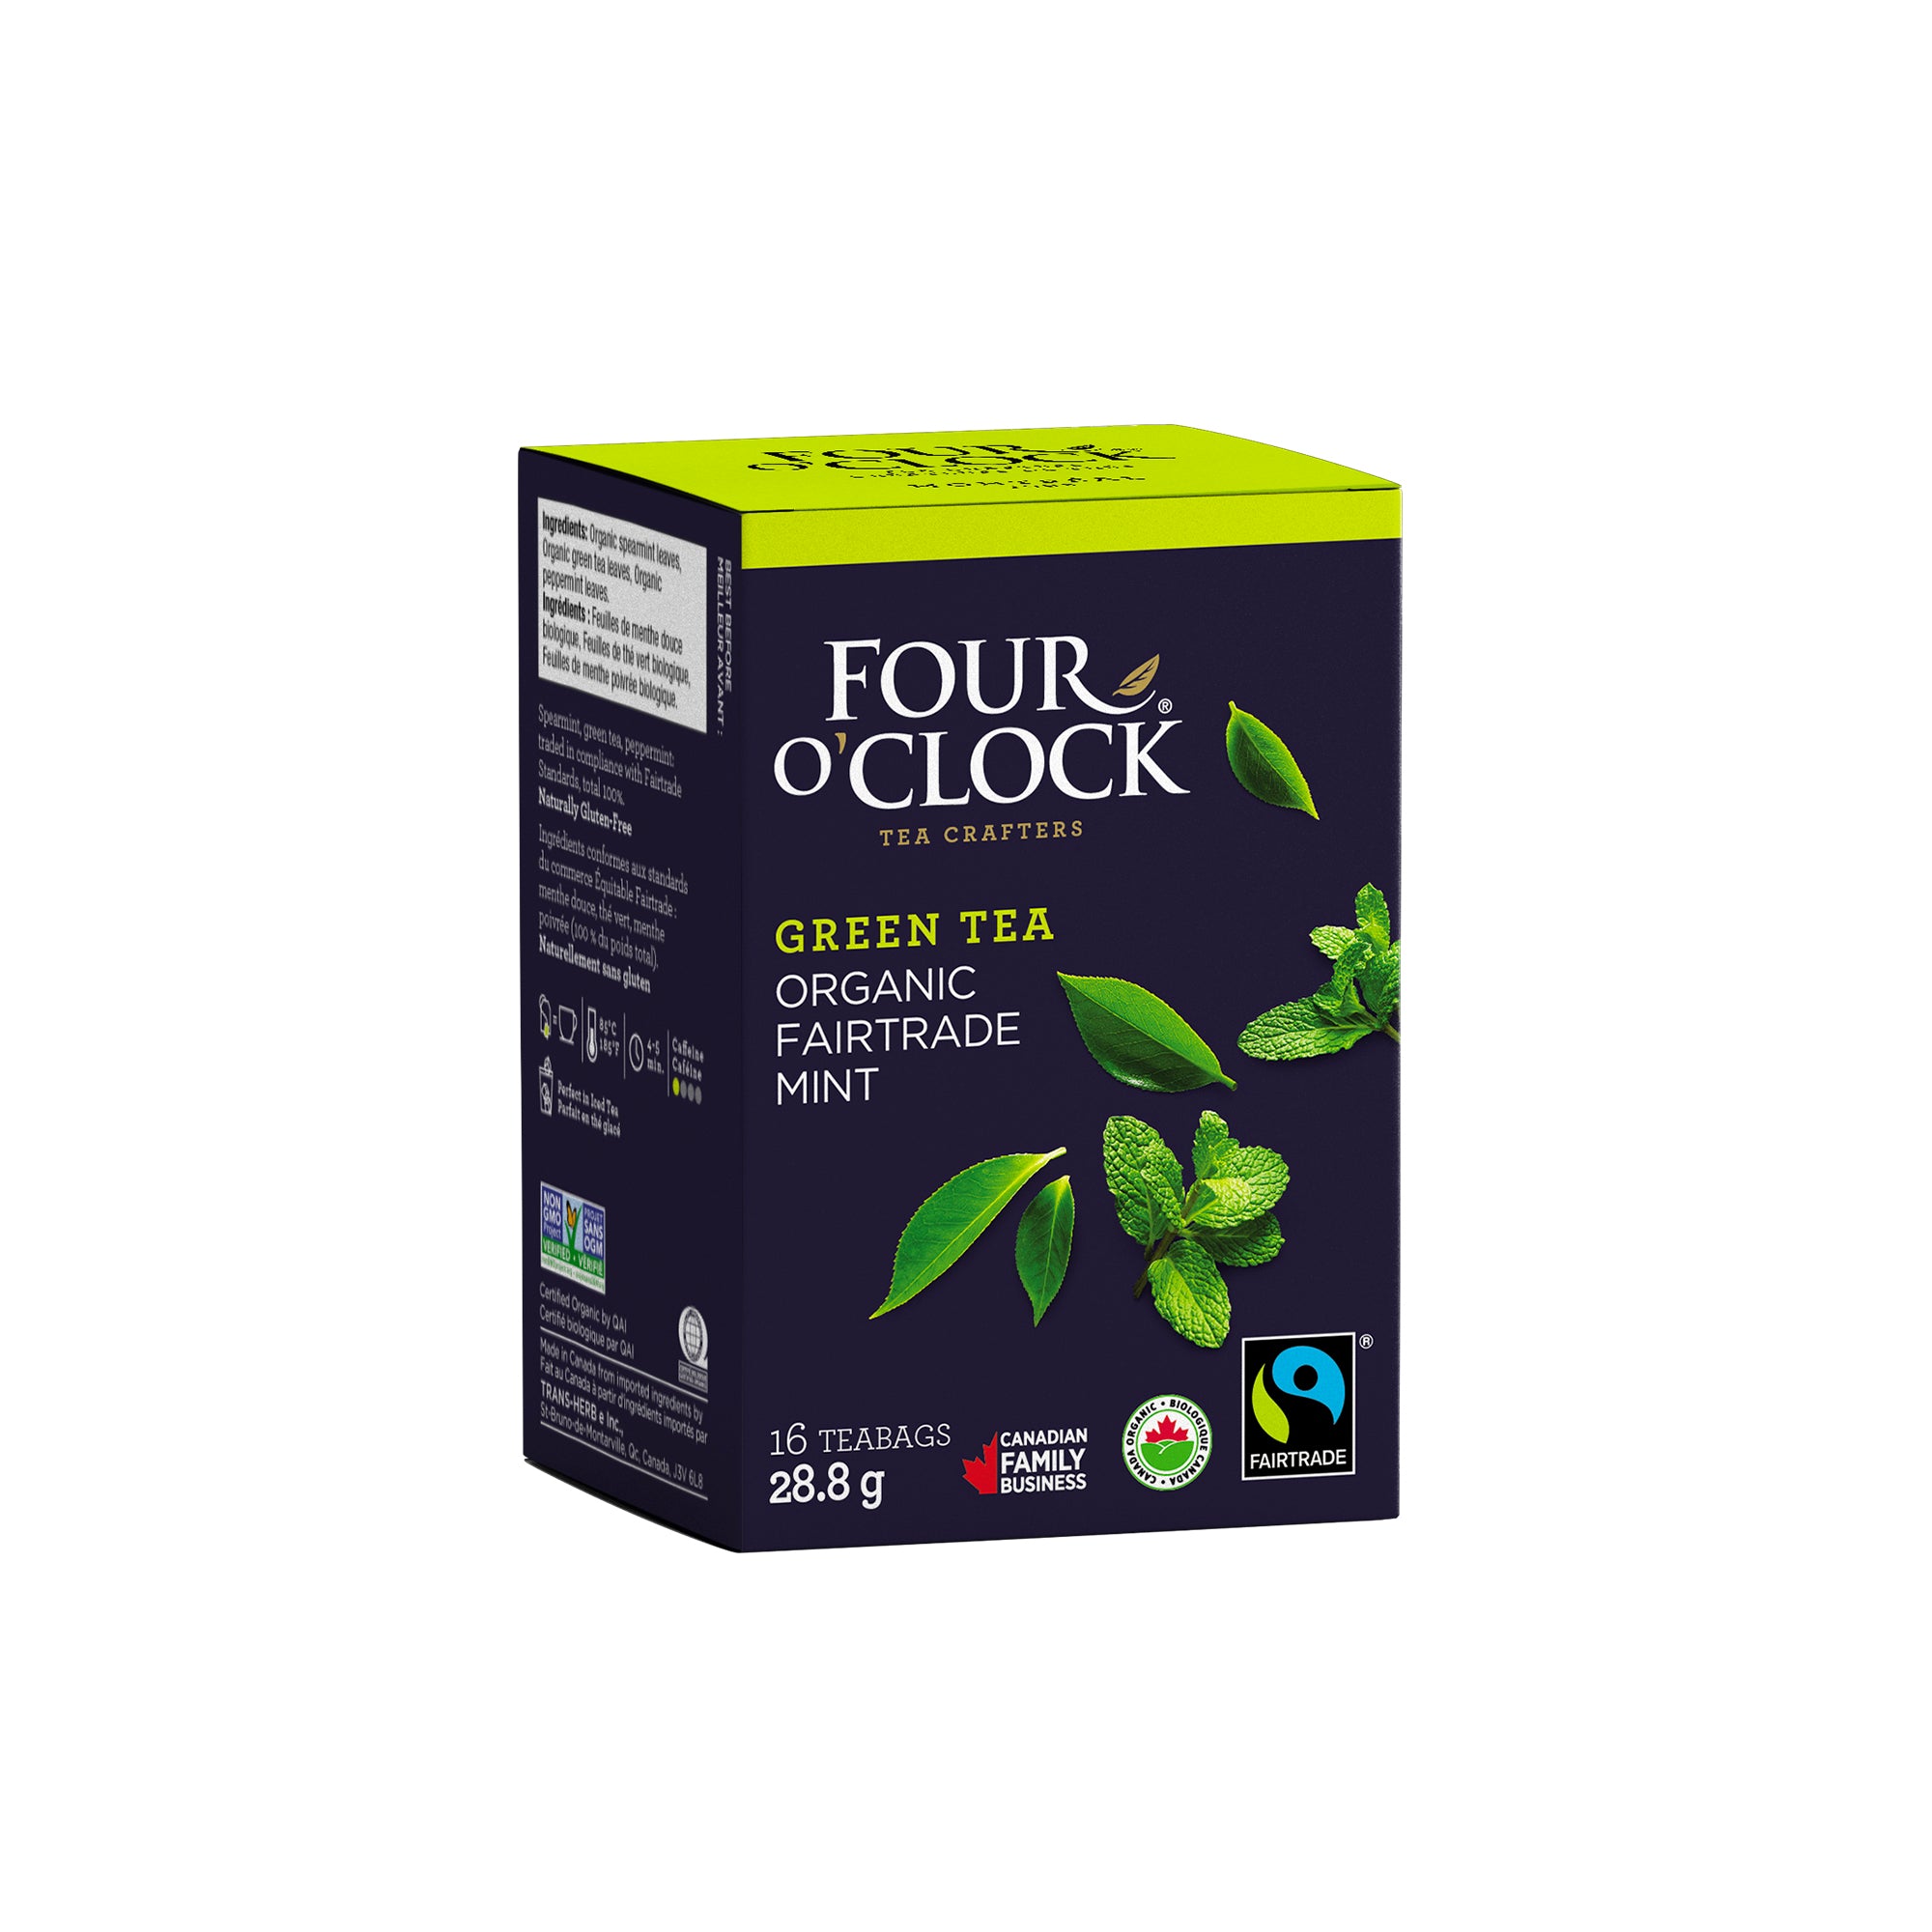 Mint Organic Fairtrade Green Tea